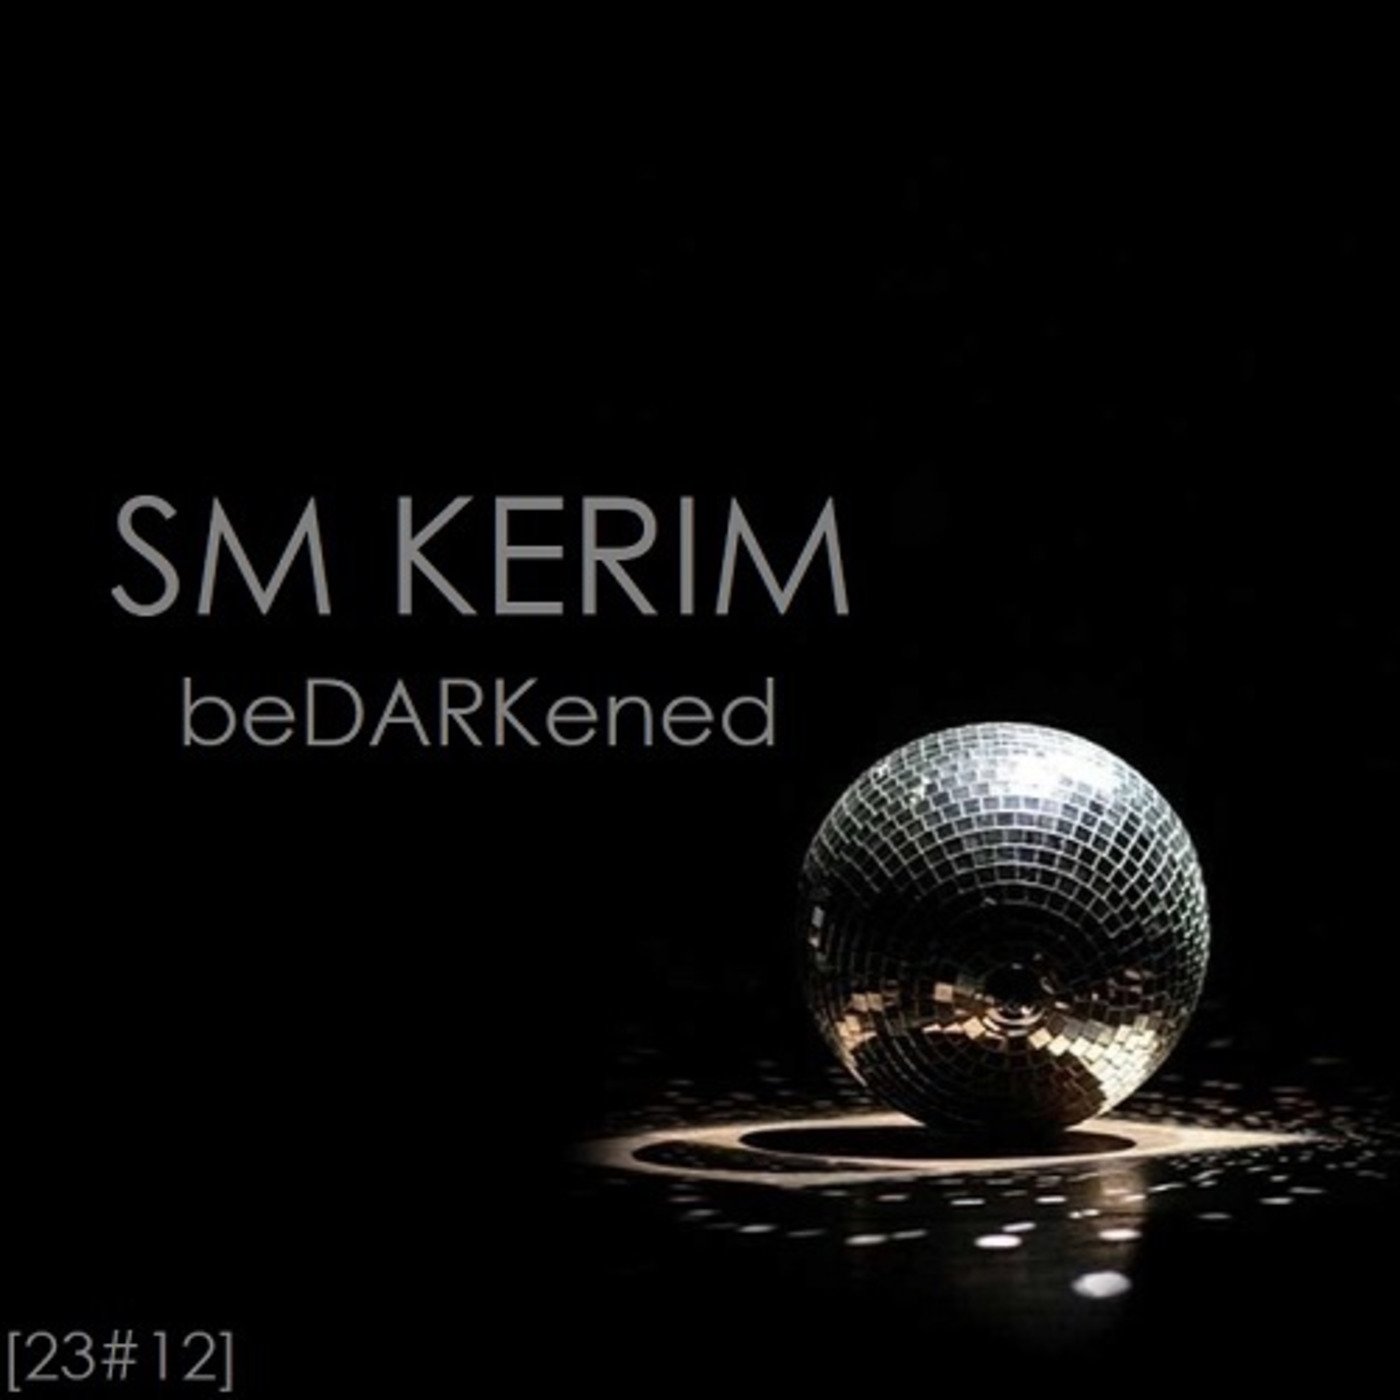 SM KERIM - beDARKened (23#12)